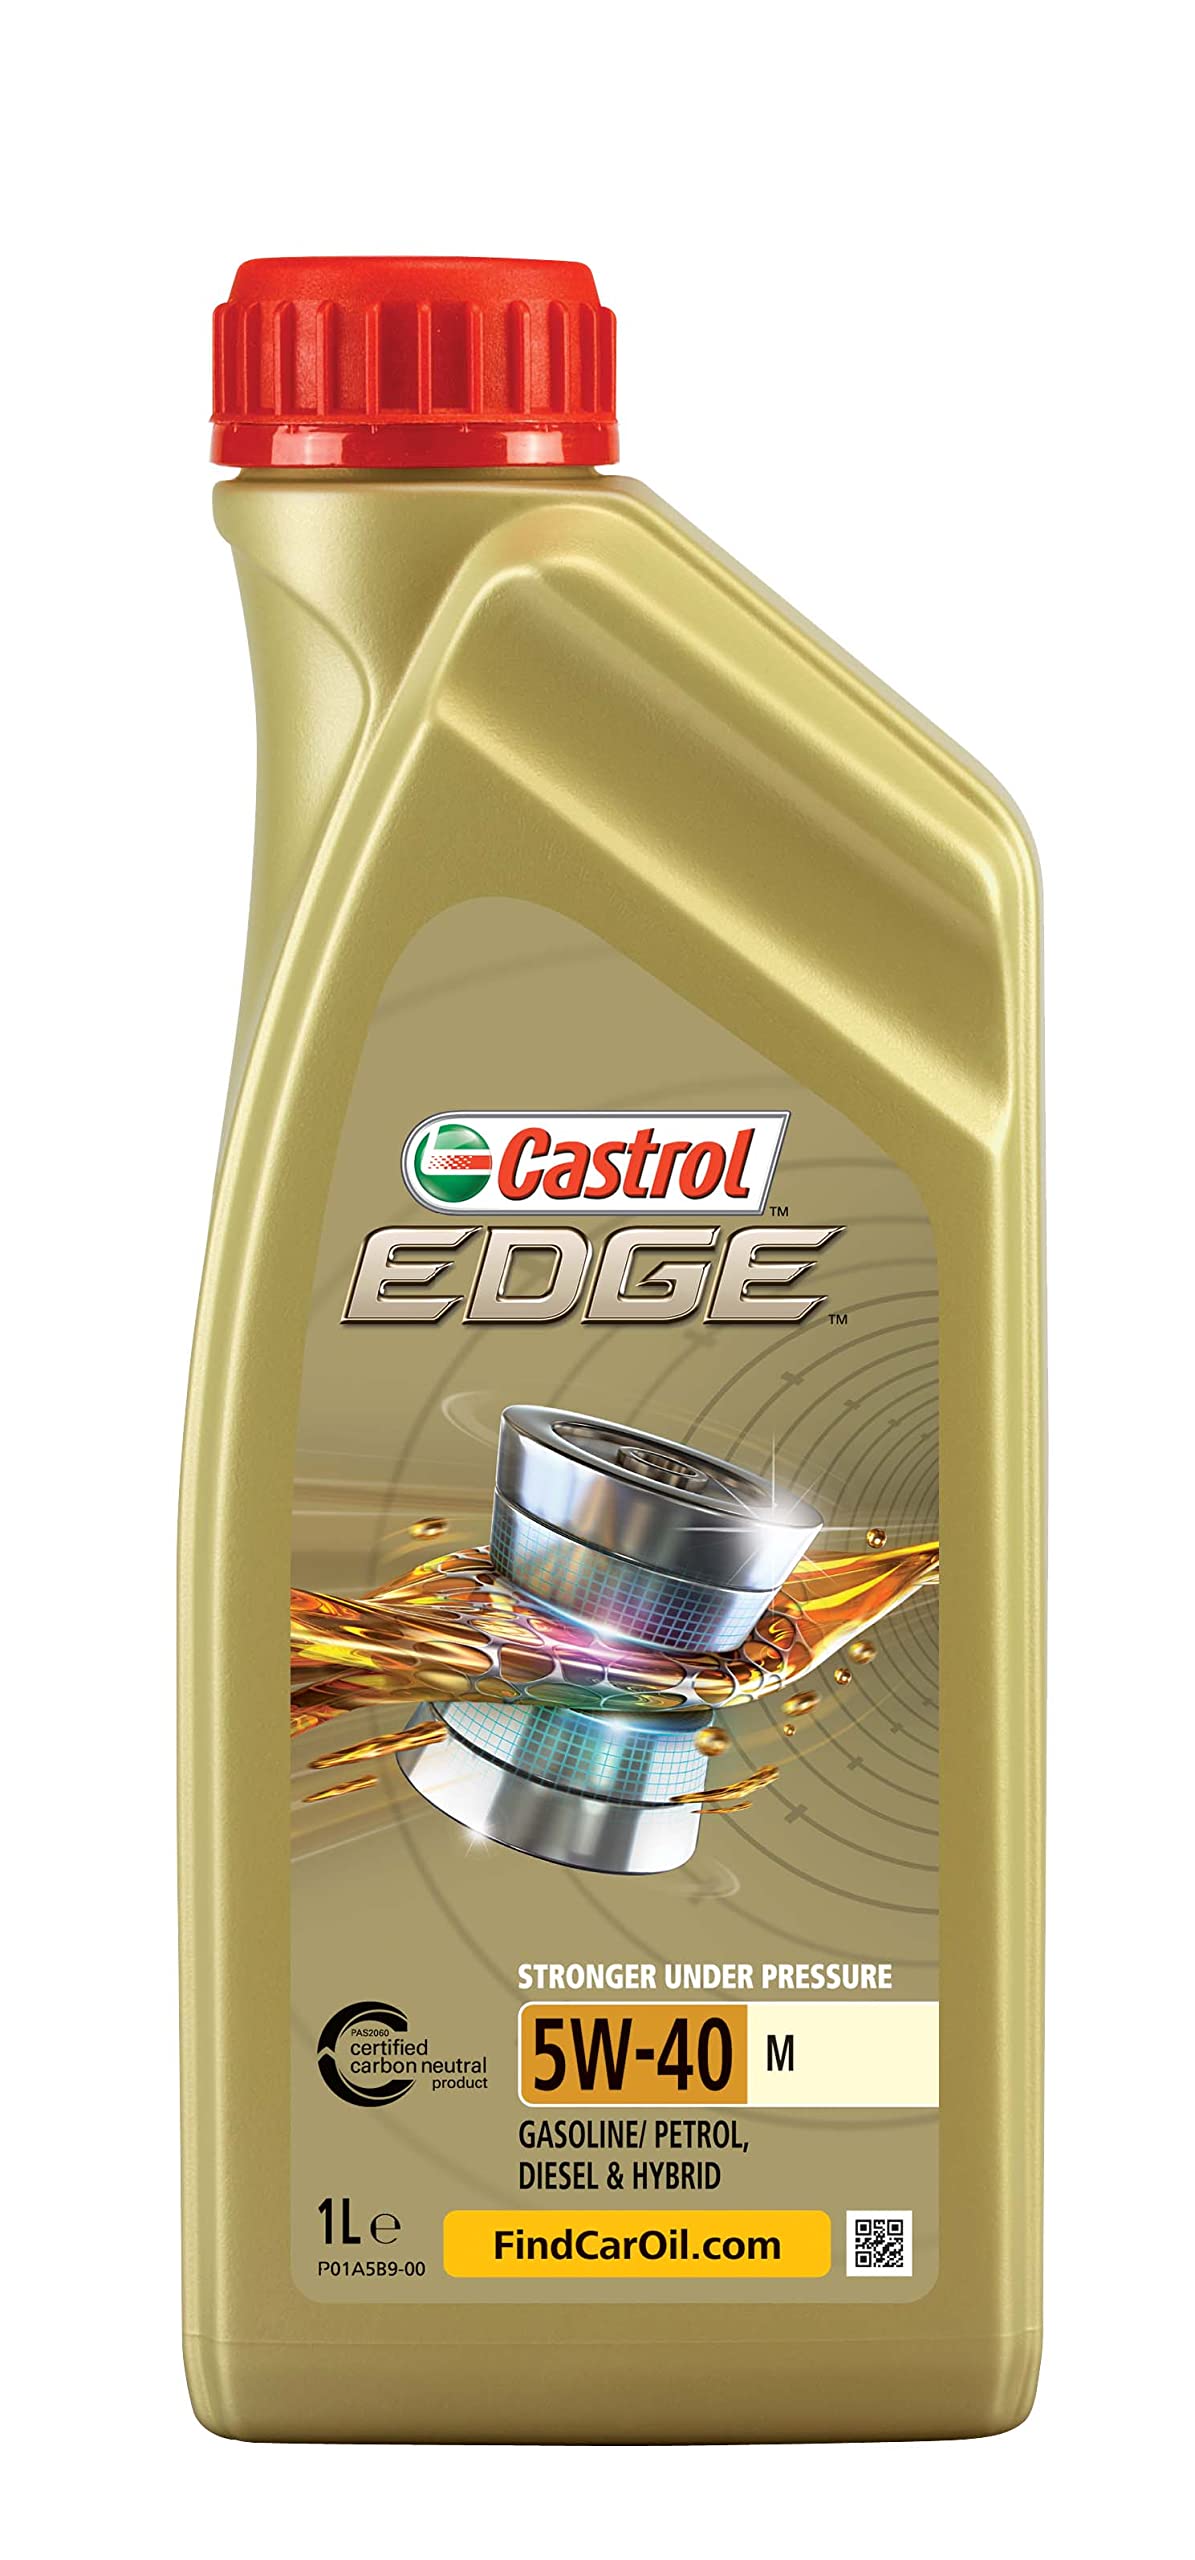 Castrol EDGE 5W-40 M, 1 Liter von Castrol